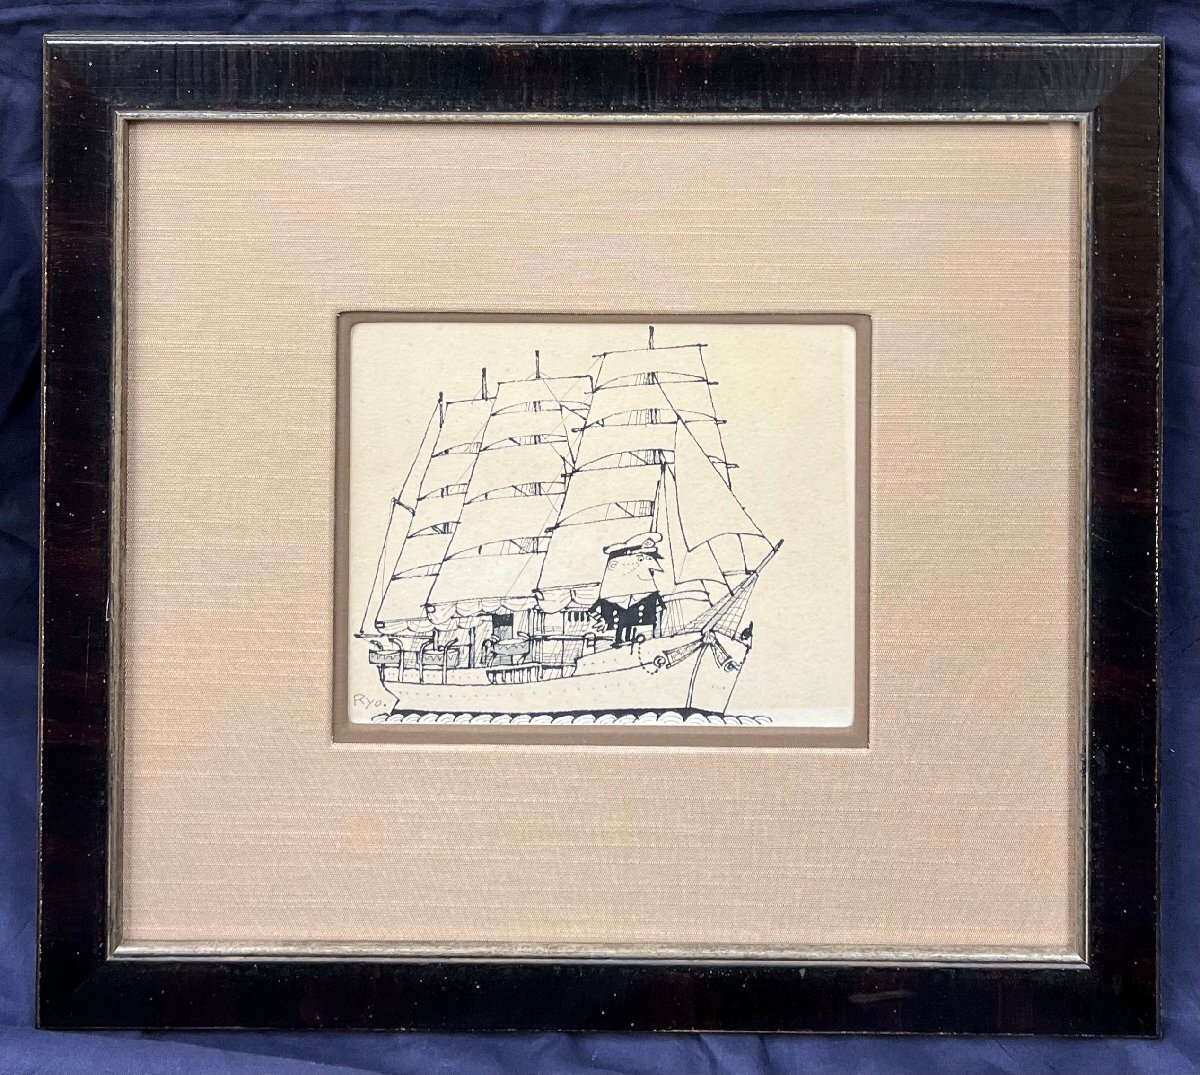 柳原亮平 Nippon Maru 钢笔画, 尺寸 0-1, 1976, 框架, 保证是正品[非常有价值的手绘作品, 以托利党广告设计和船舶图纸而闻名, 在横滨度过了一段时间], 艺术品, 绘画, 肖像